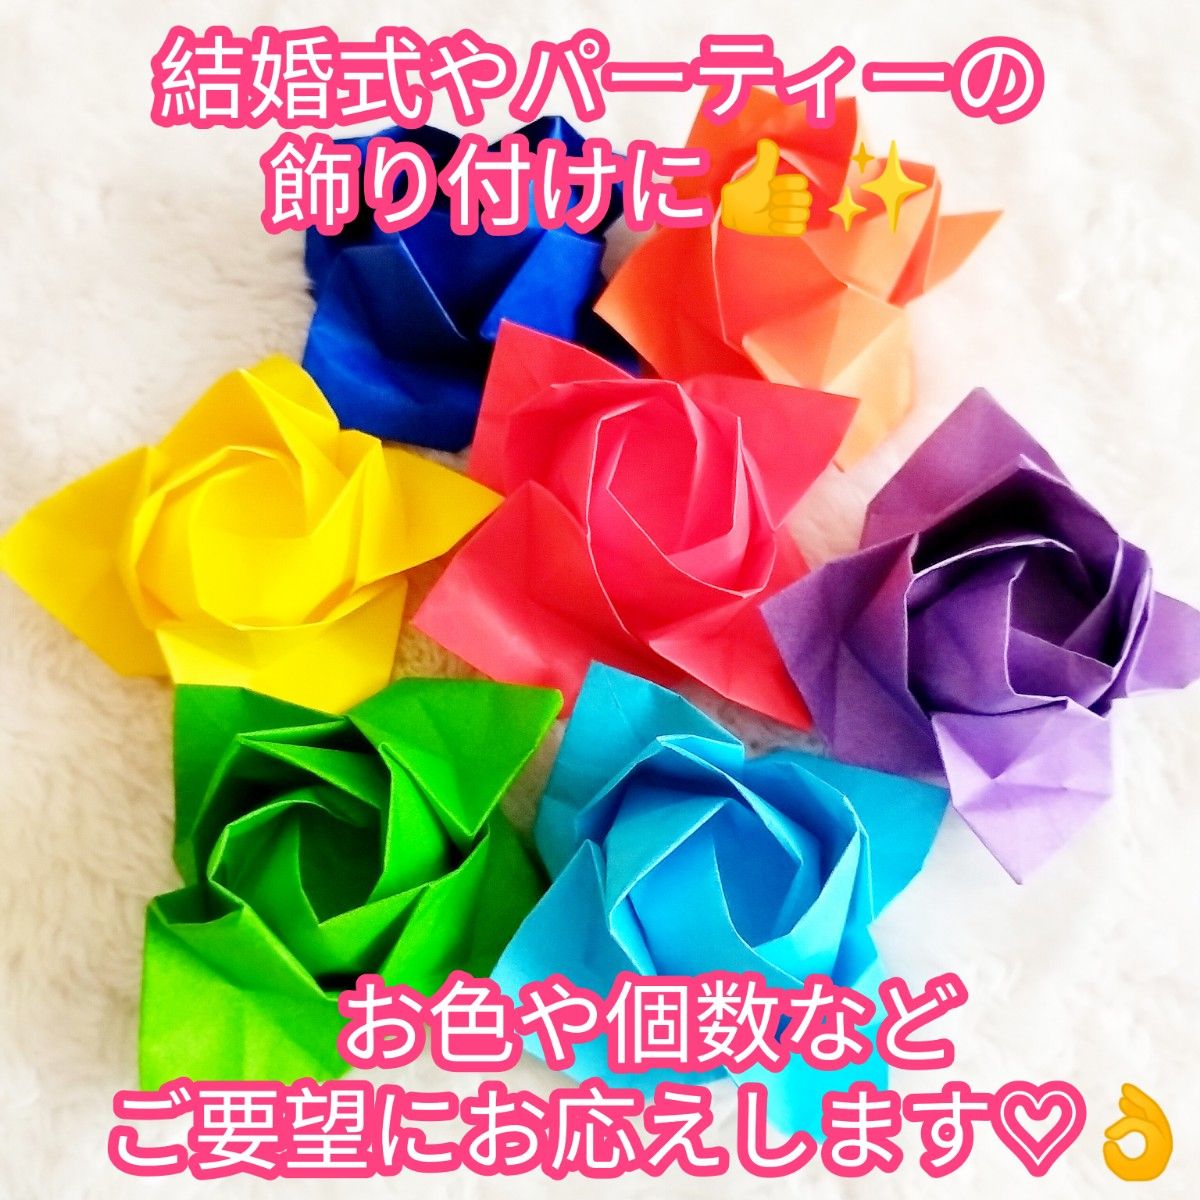 【ハンドメイド】折り紙☆薔薇(立体タイプ) レインボーカラー3セット